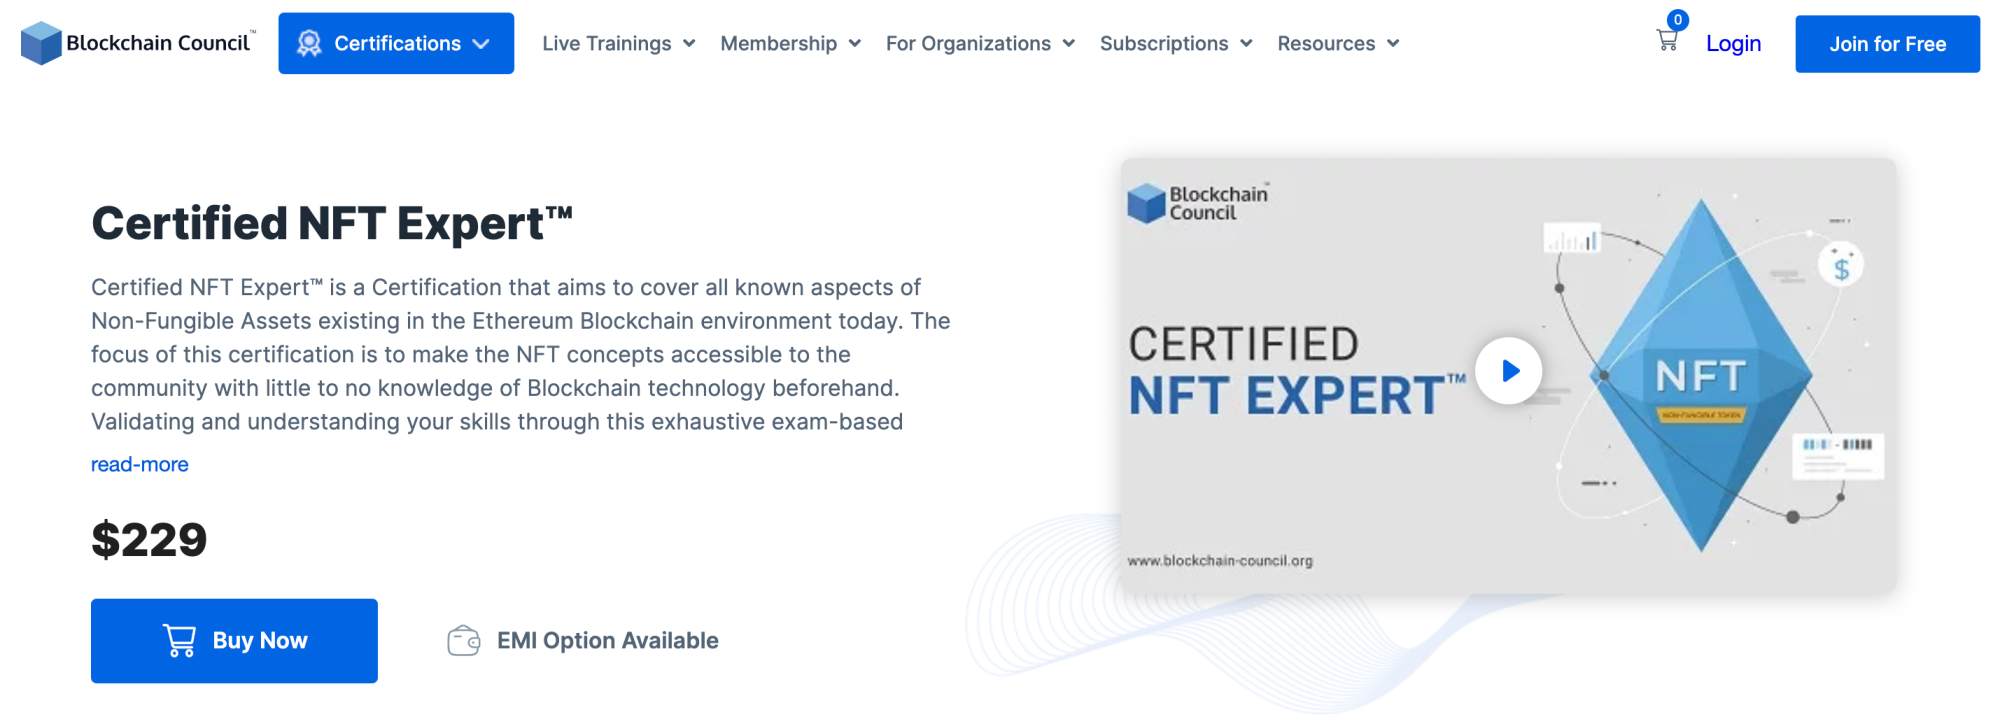 Certified NFT Expert course 